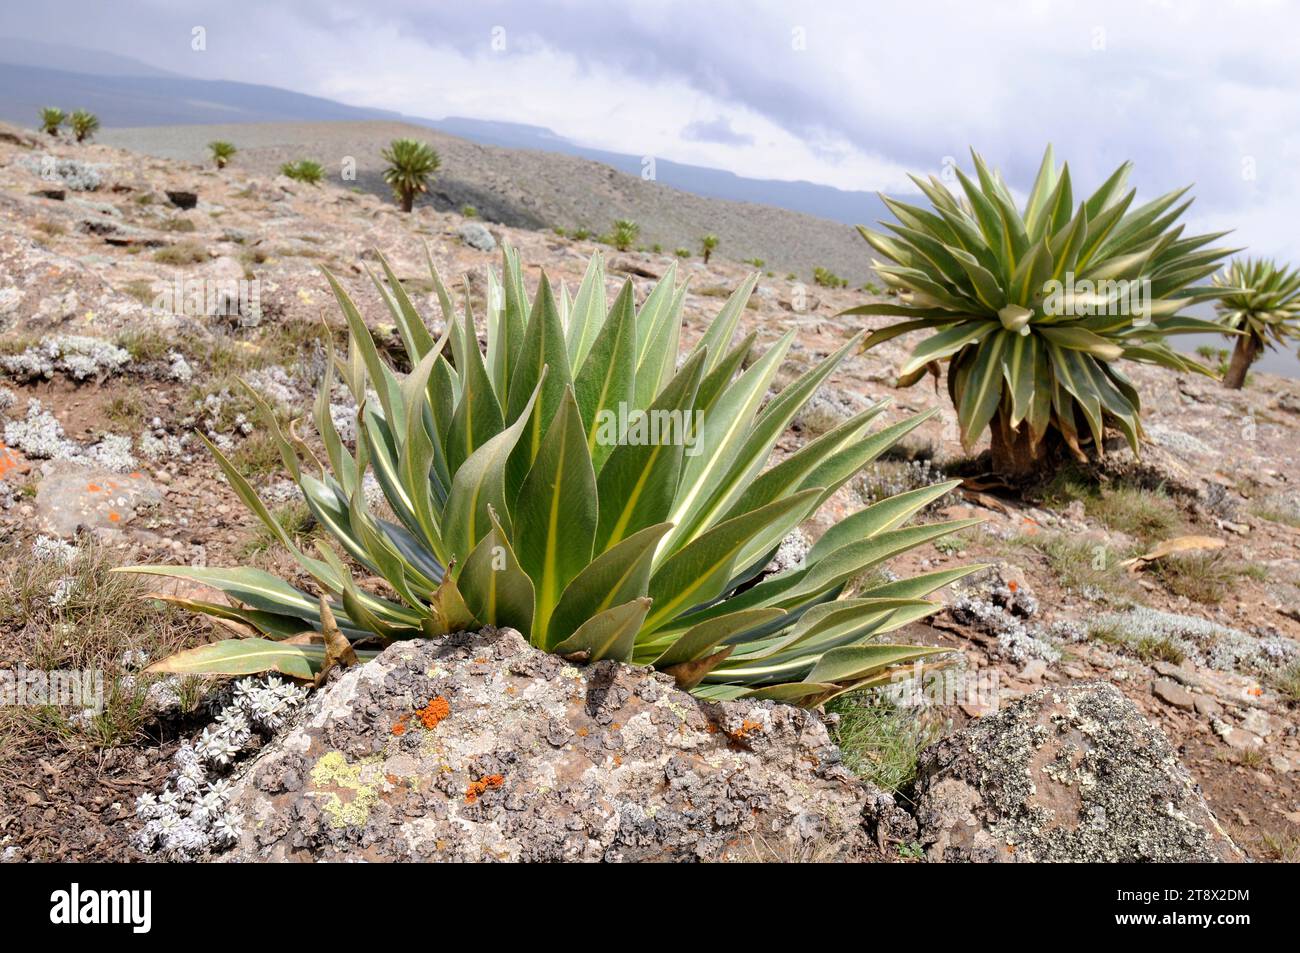 Giant lobelia (Lobelia rhynchopetalum) is a plant endemic to Ethiopia Mountains. This photo was taken in Bale Mountains National Park, Ethiopia. Stock Photo